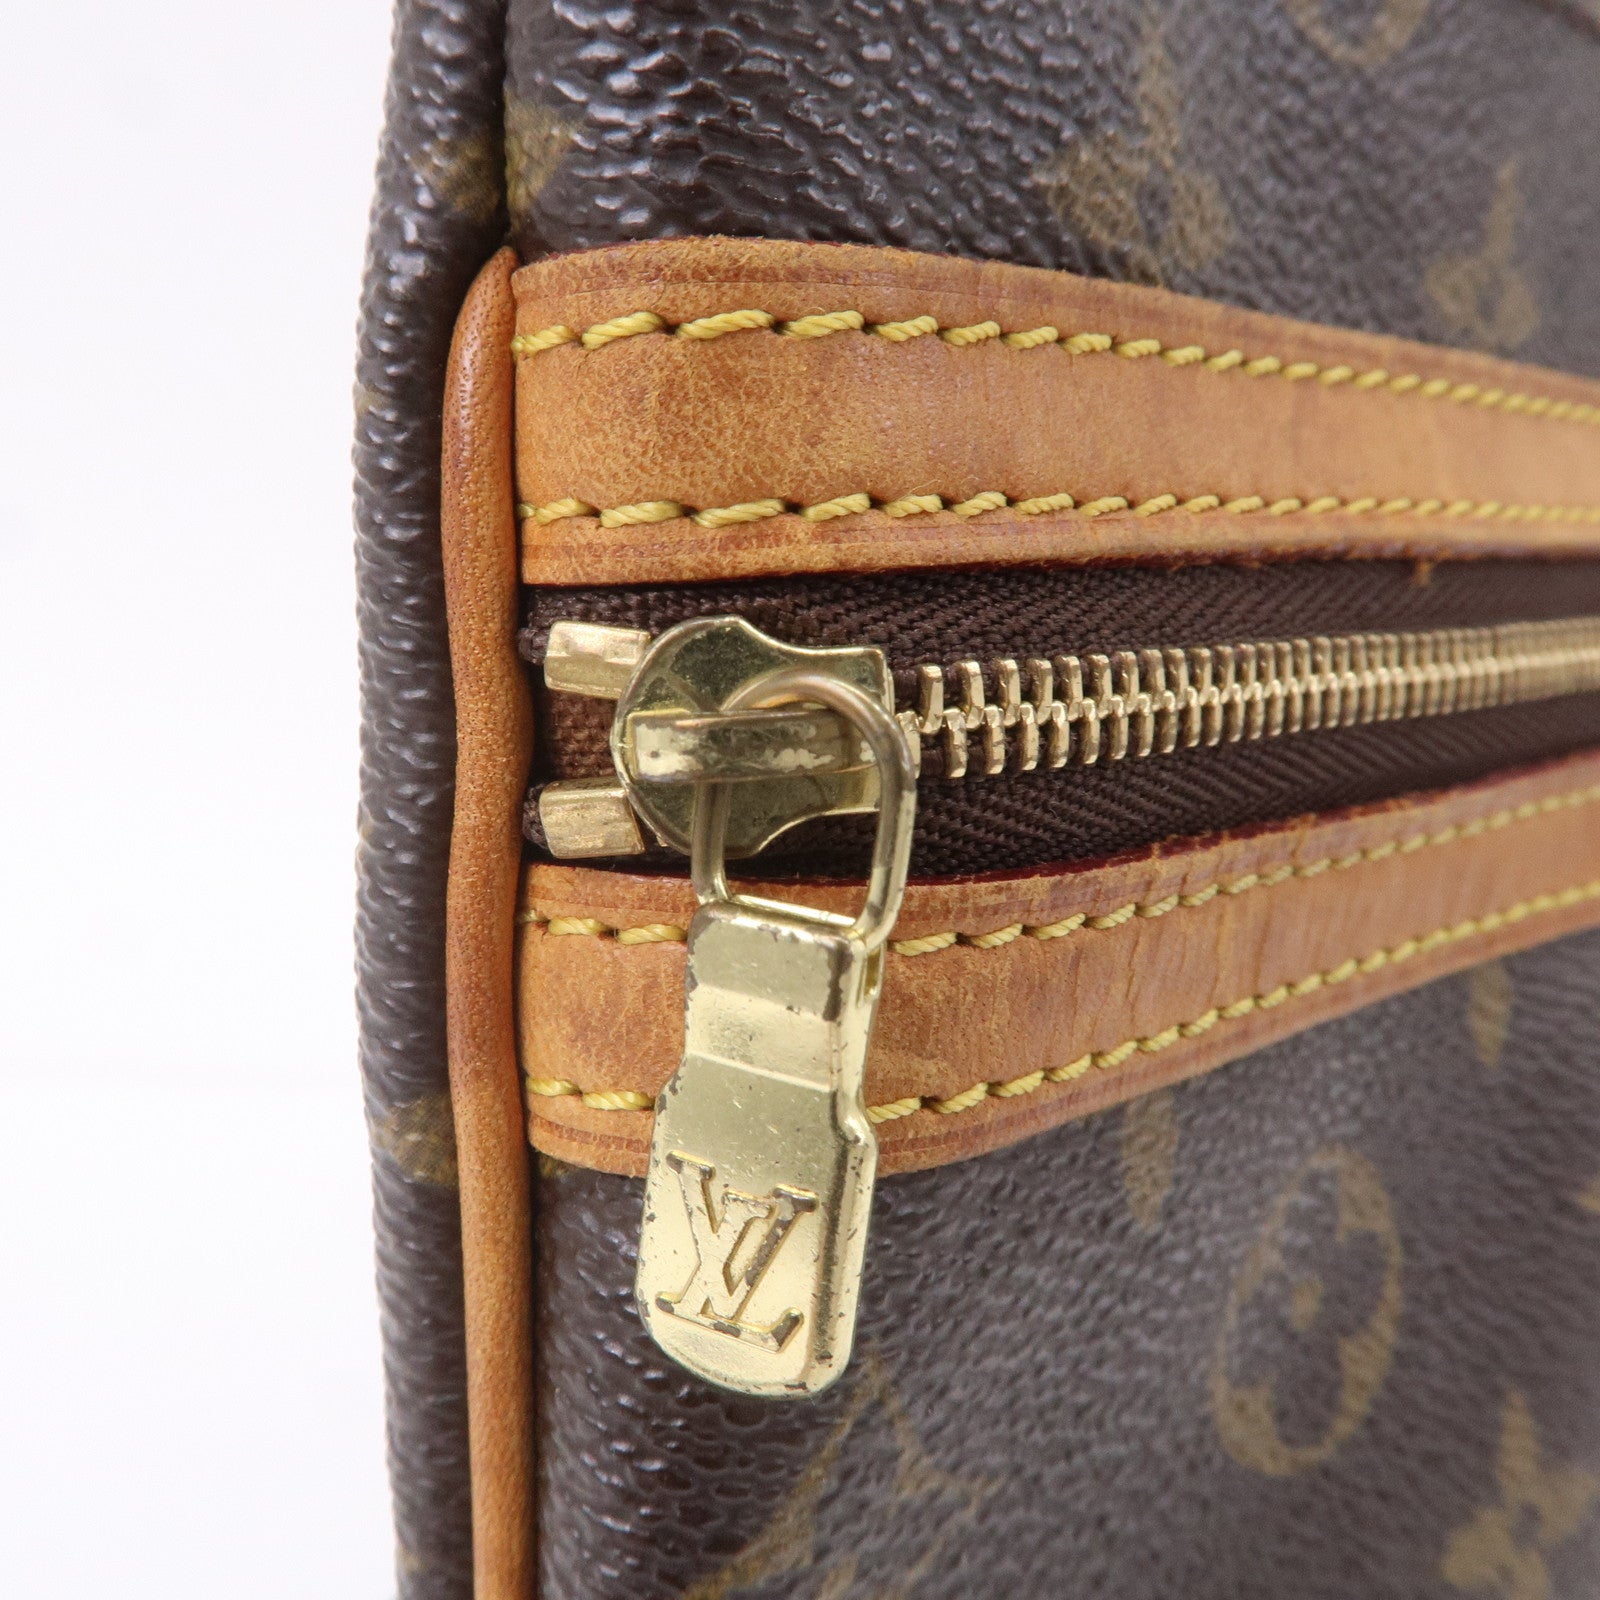 Louis Vuitton Bosphore Pochette Damier - ShopStyle Shoulder Bags